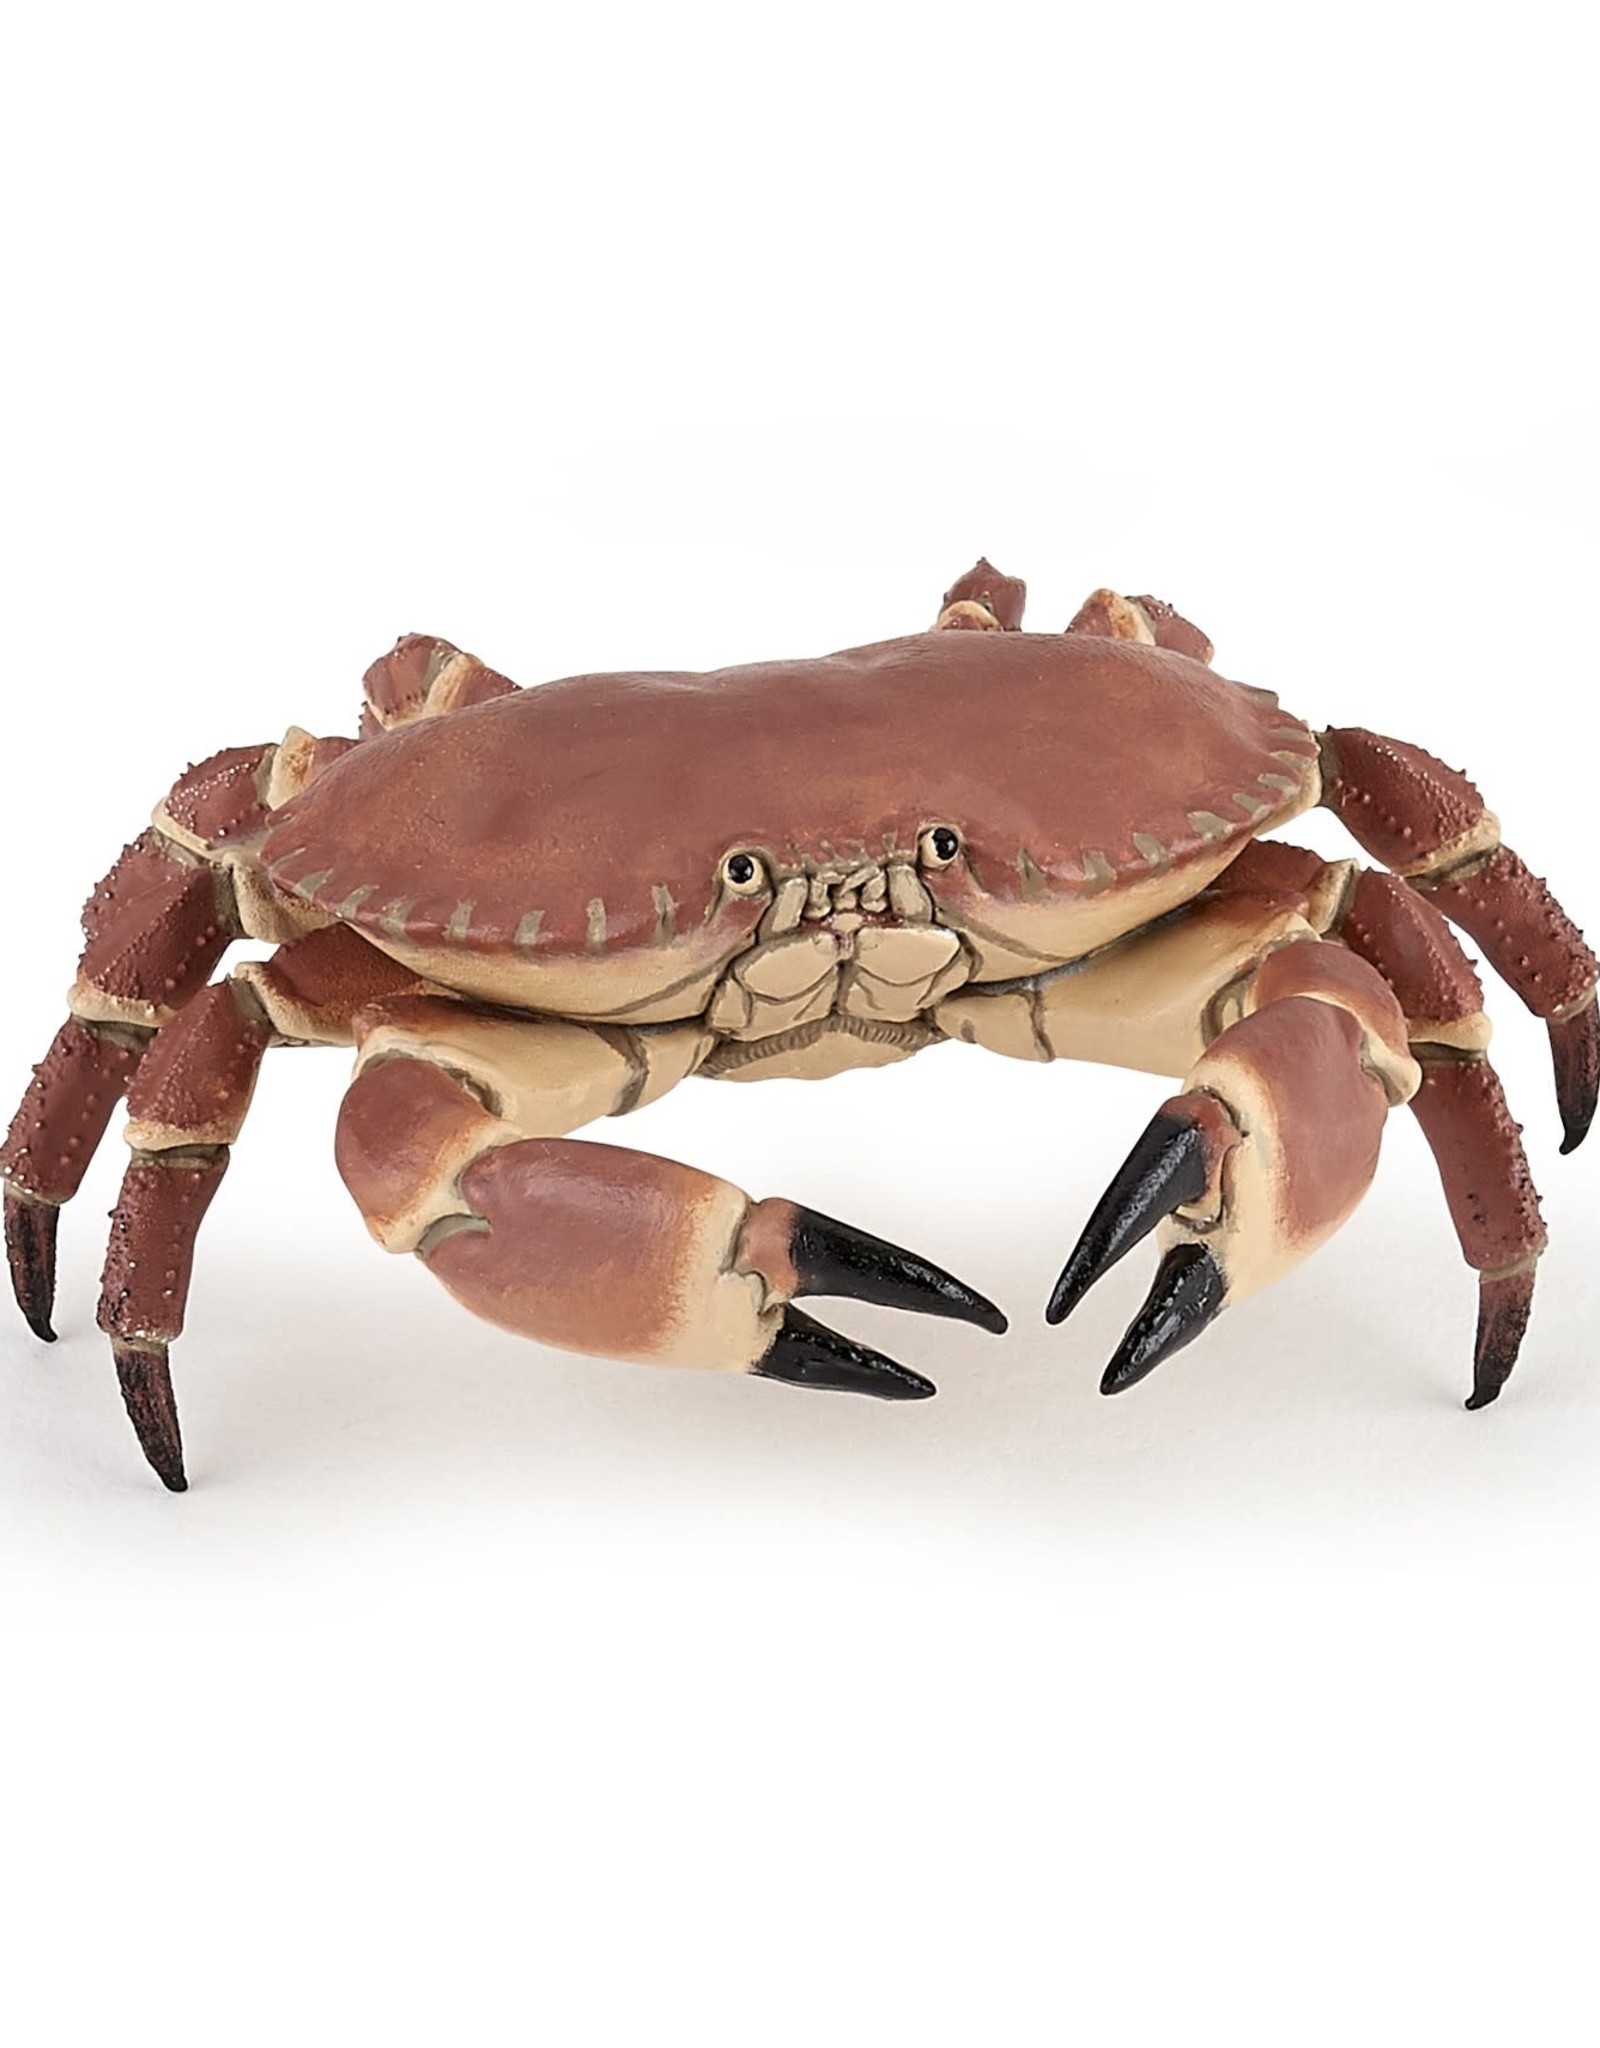 Papo Papo Crab